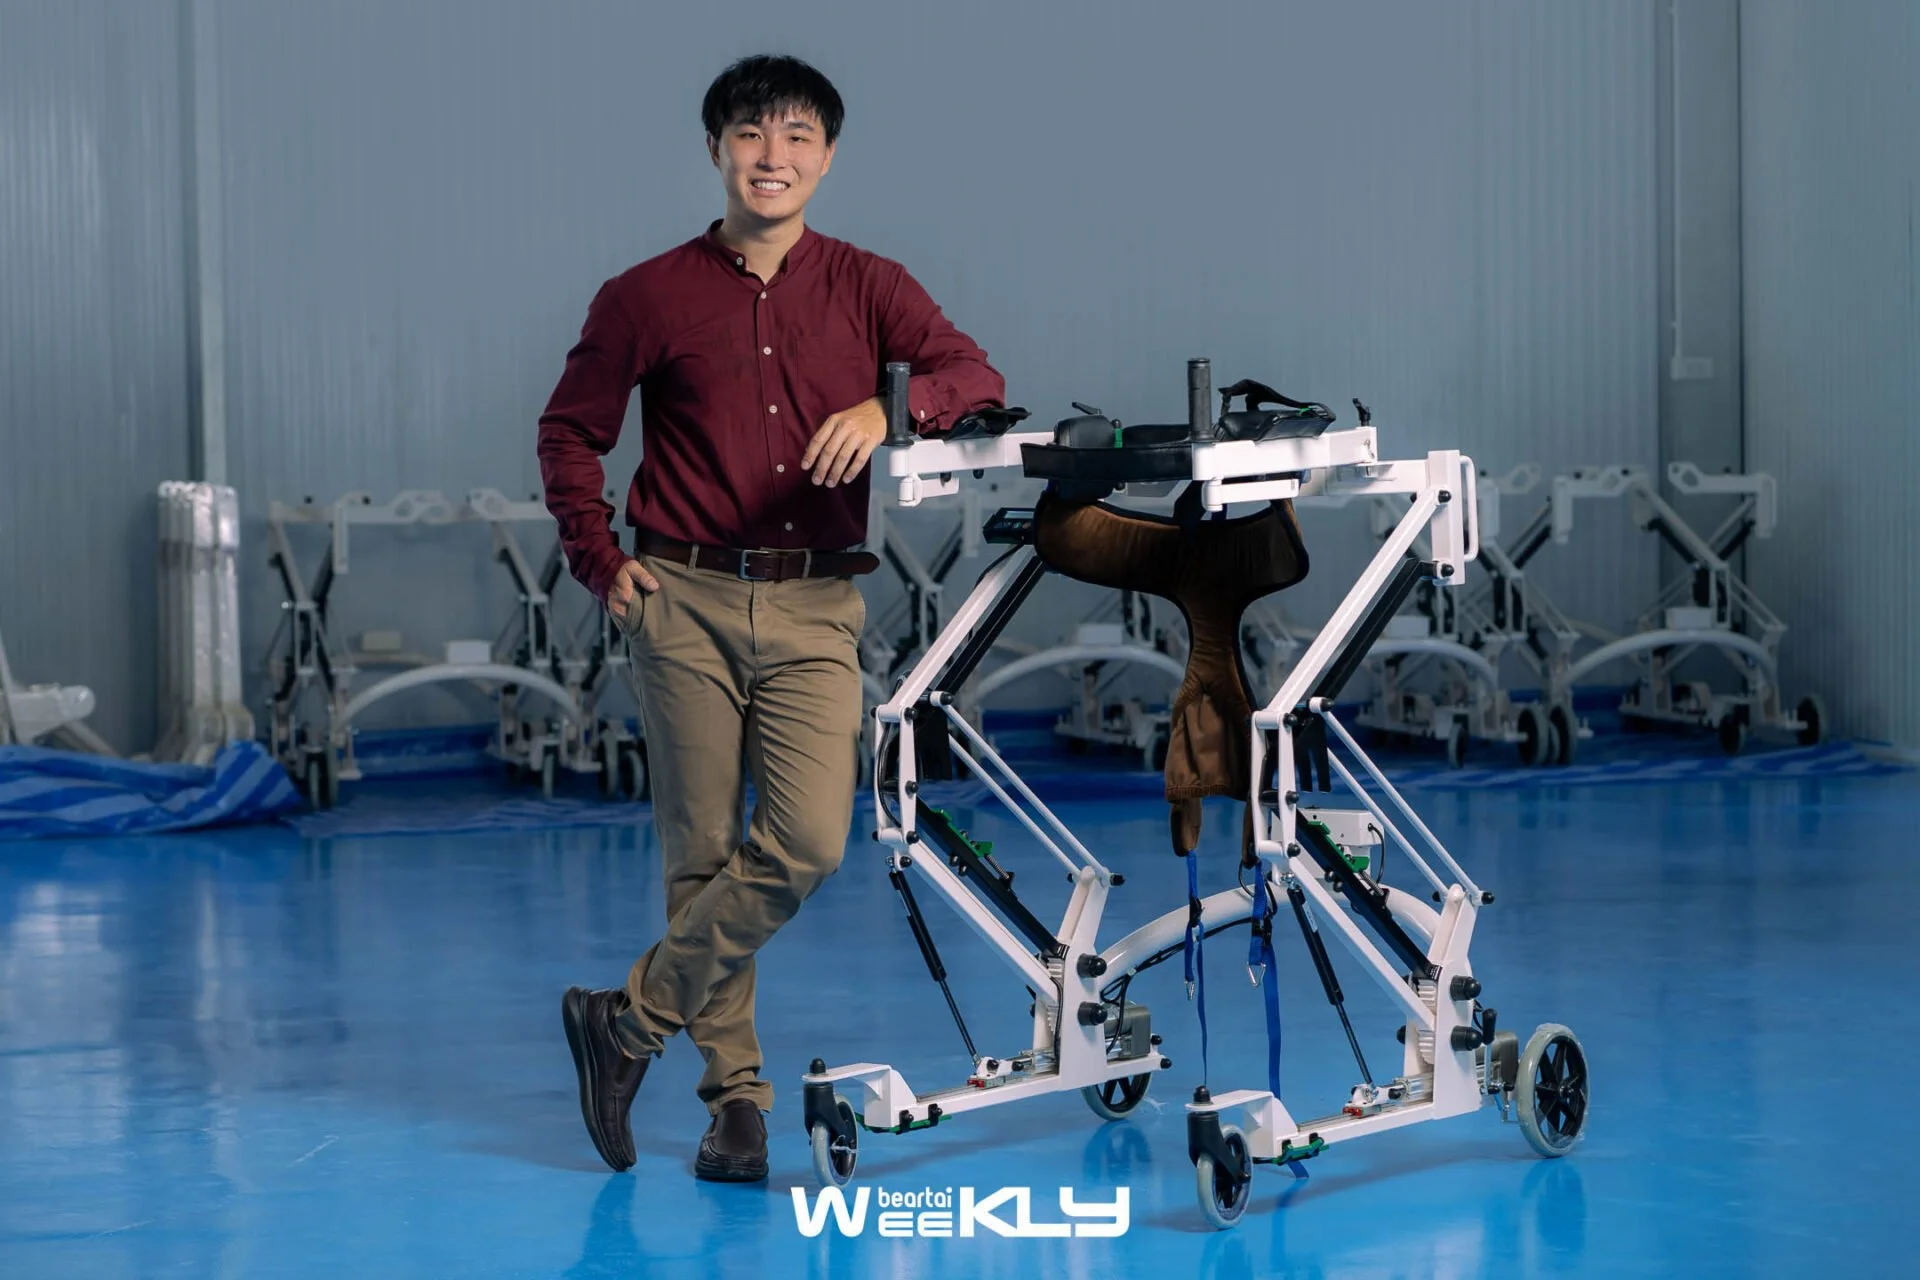 Project To Product “Space Walker” นวัตกรรมฝีมือคนไทยที่อยากให้ผู้ป่วยกลับมาเดินได้อีกครั้ง